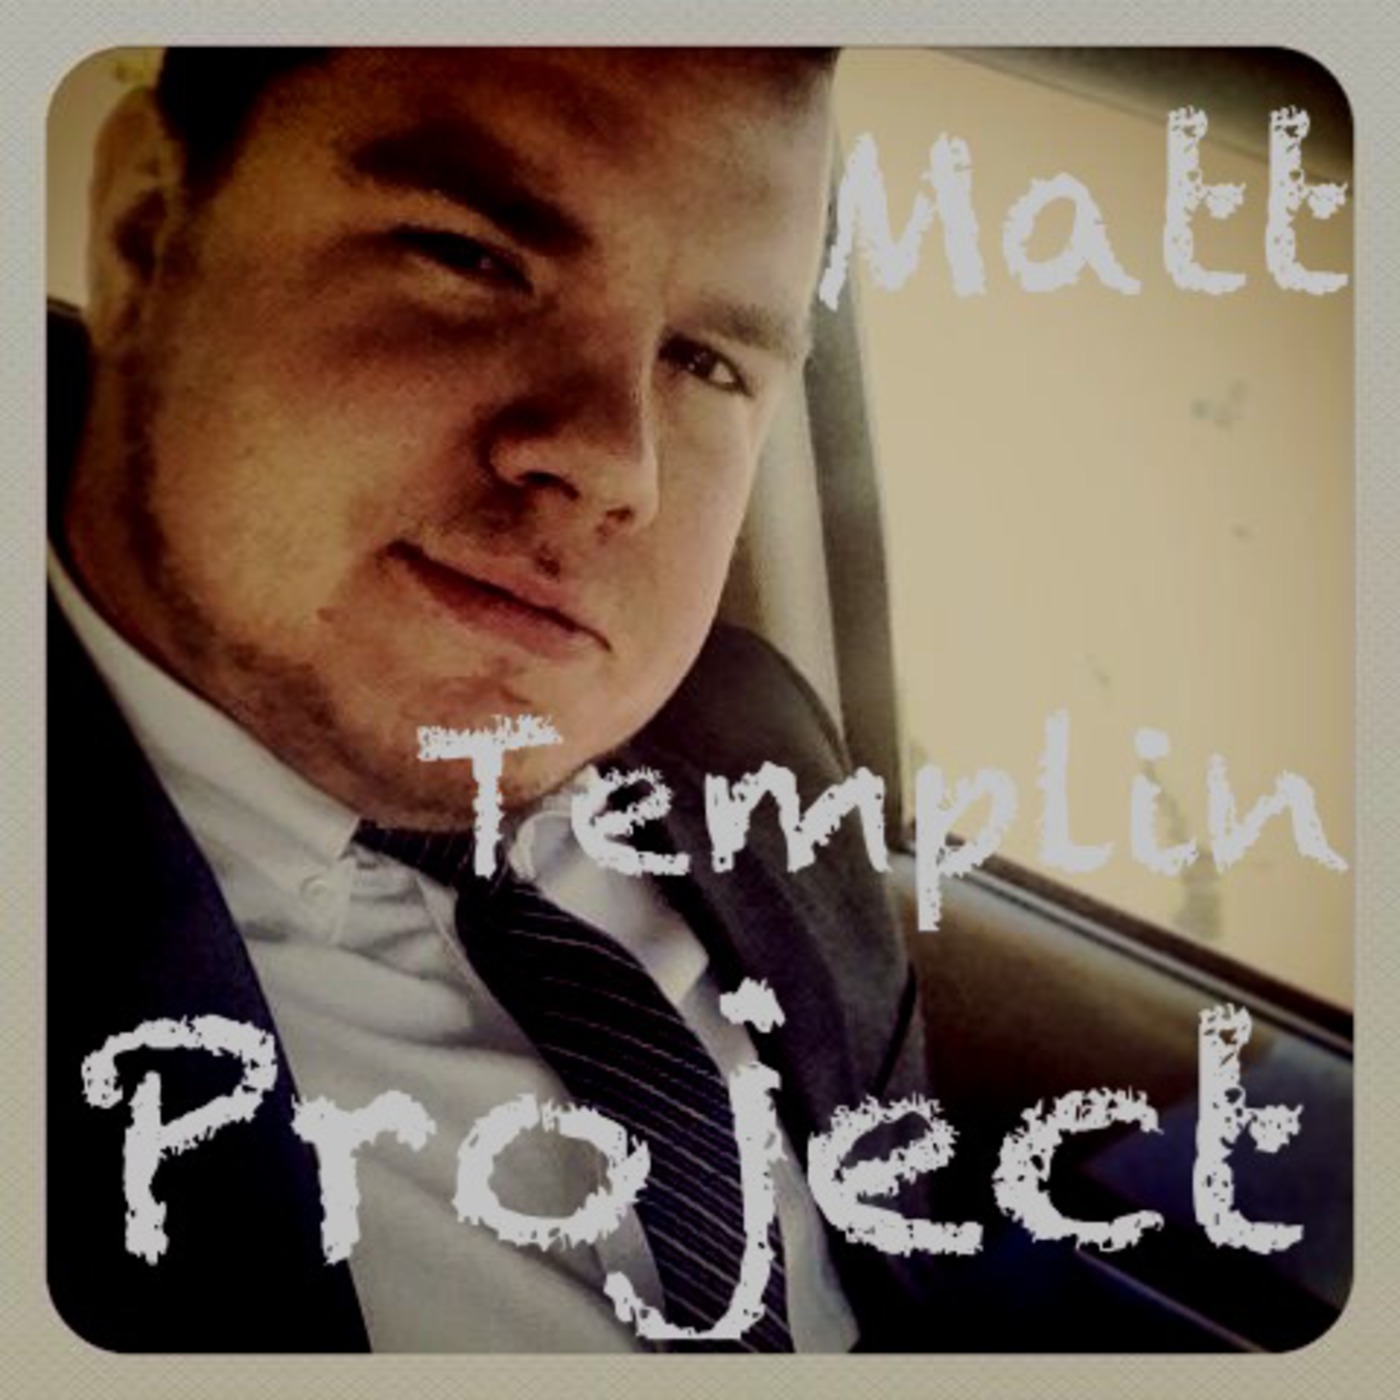 Matt Templin Project